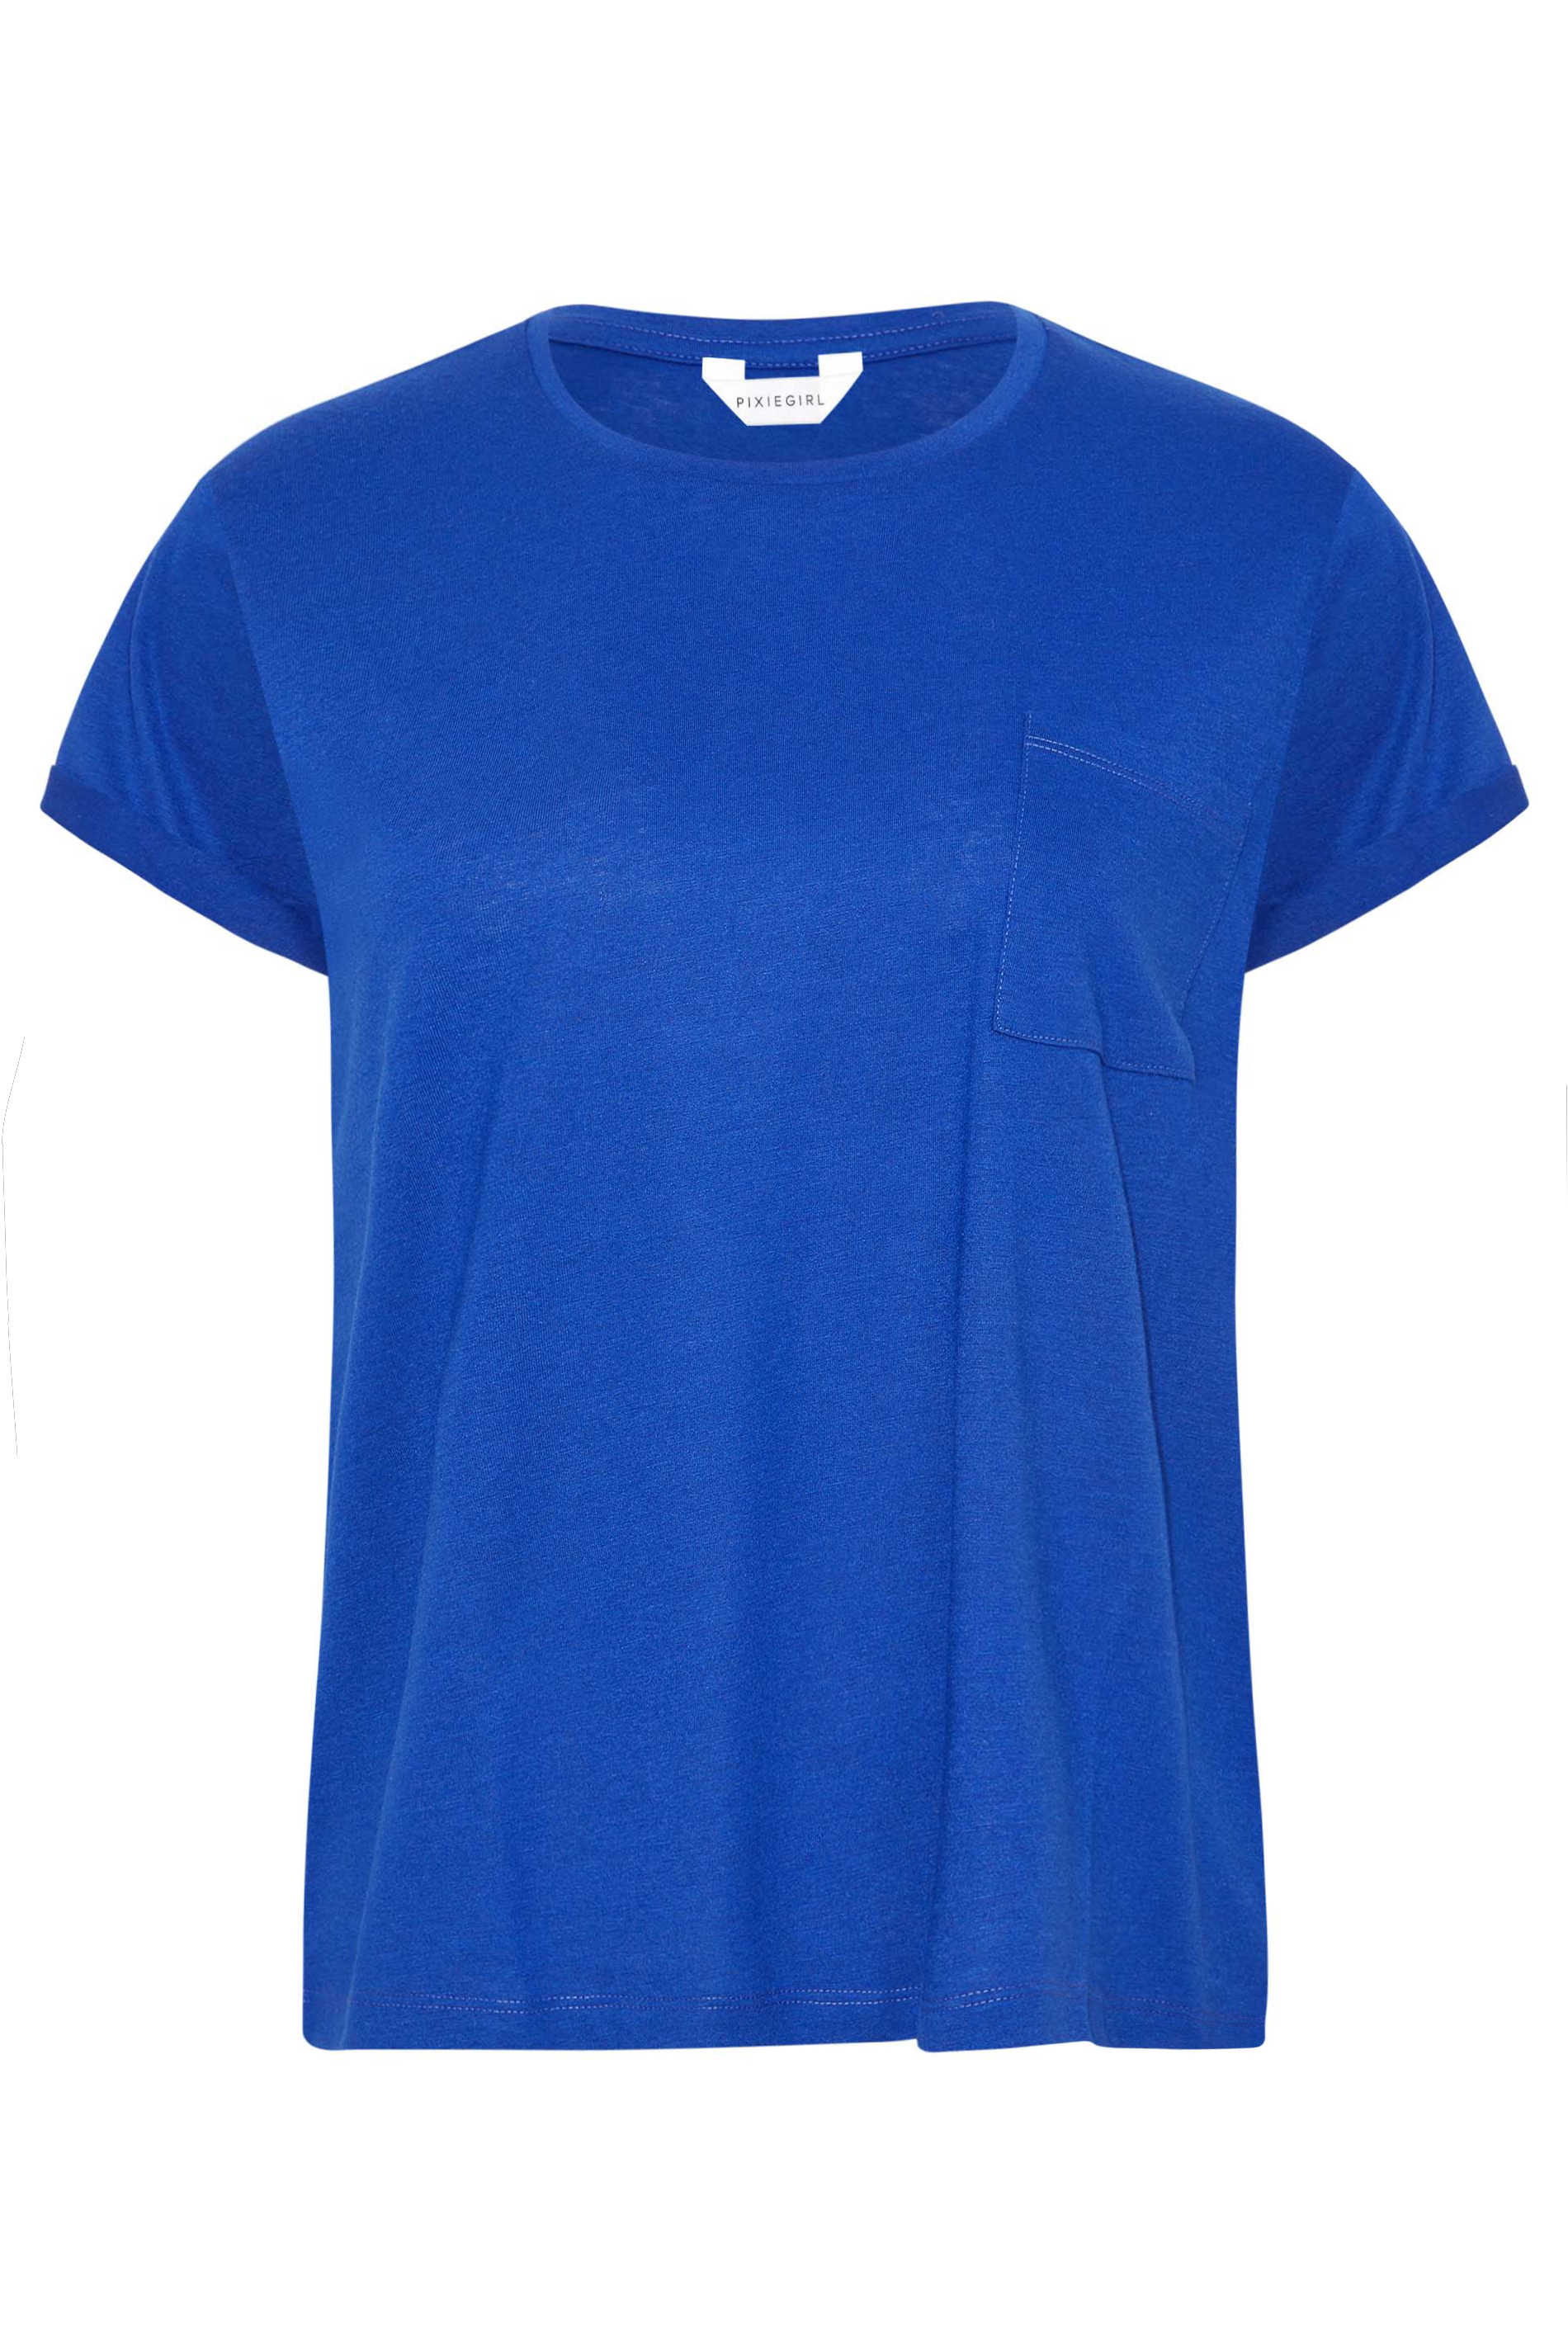 Petite Cobalt Blue Short Sleeve Pocket T-Shirt | PixieGirl